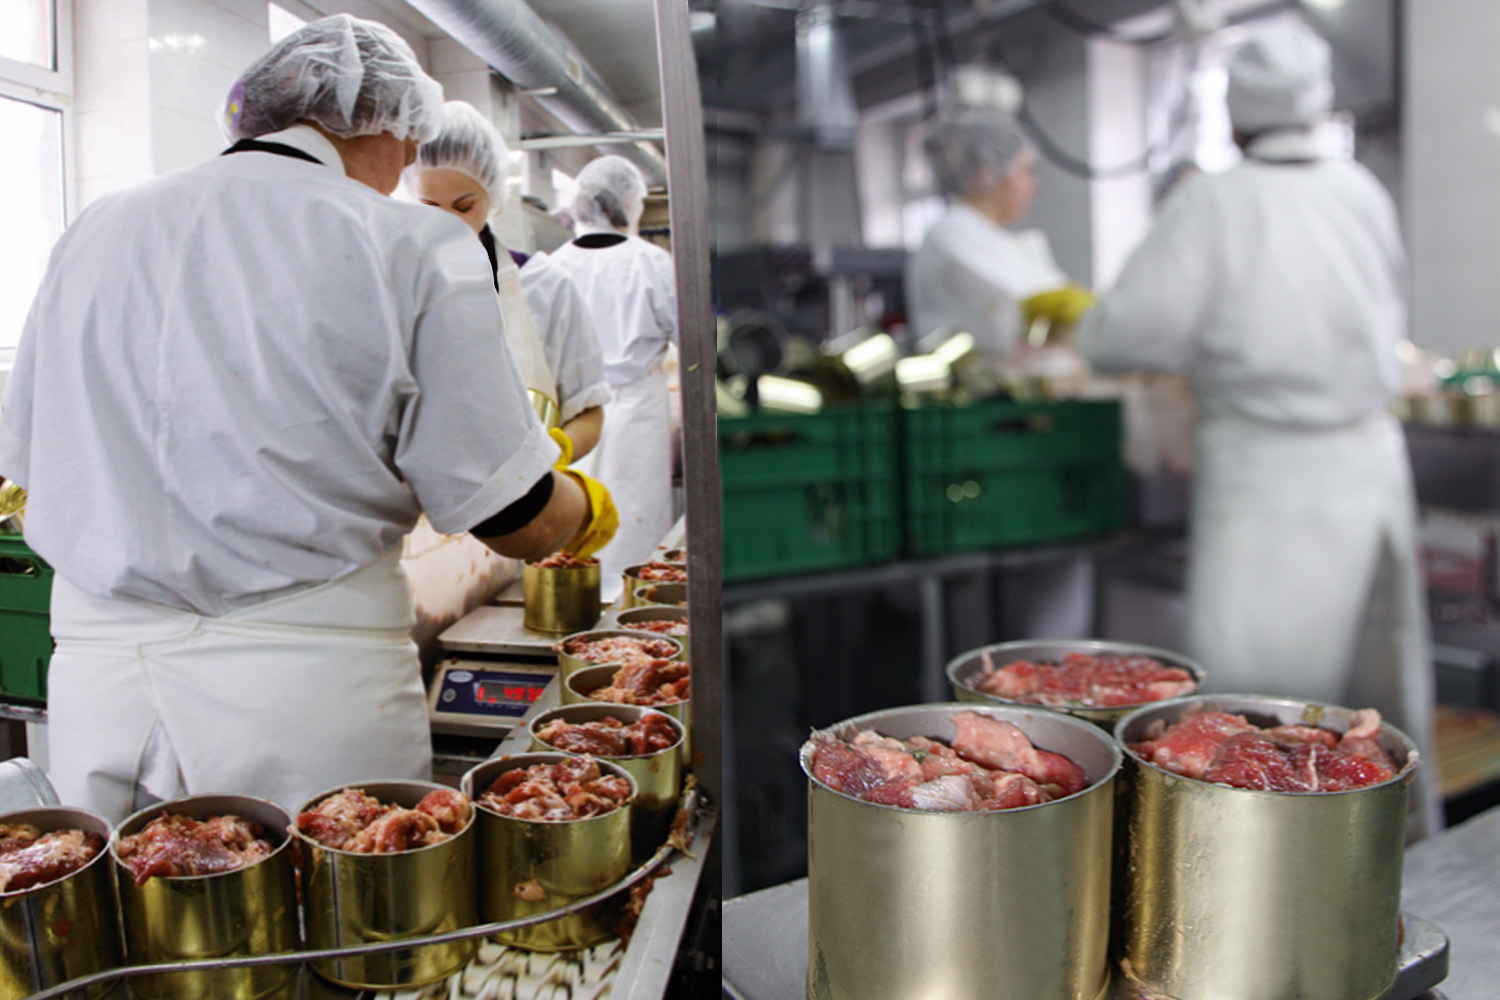 МясоКонсервный завод АРГО в Калининграде по производству мясных консервов